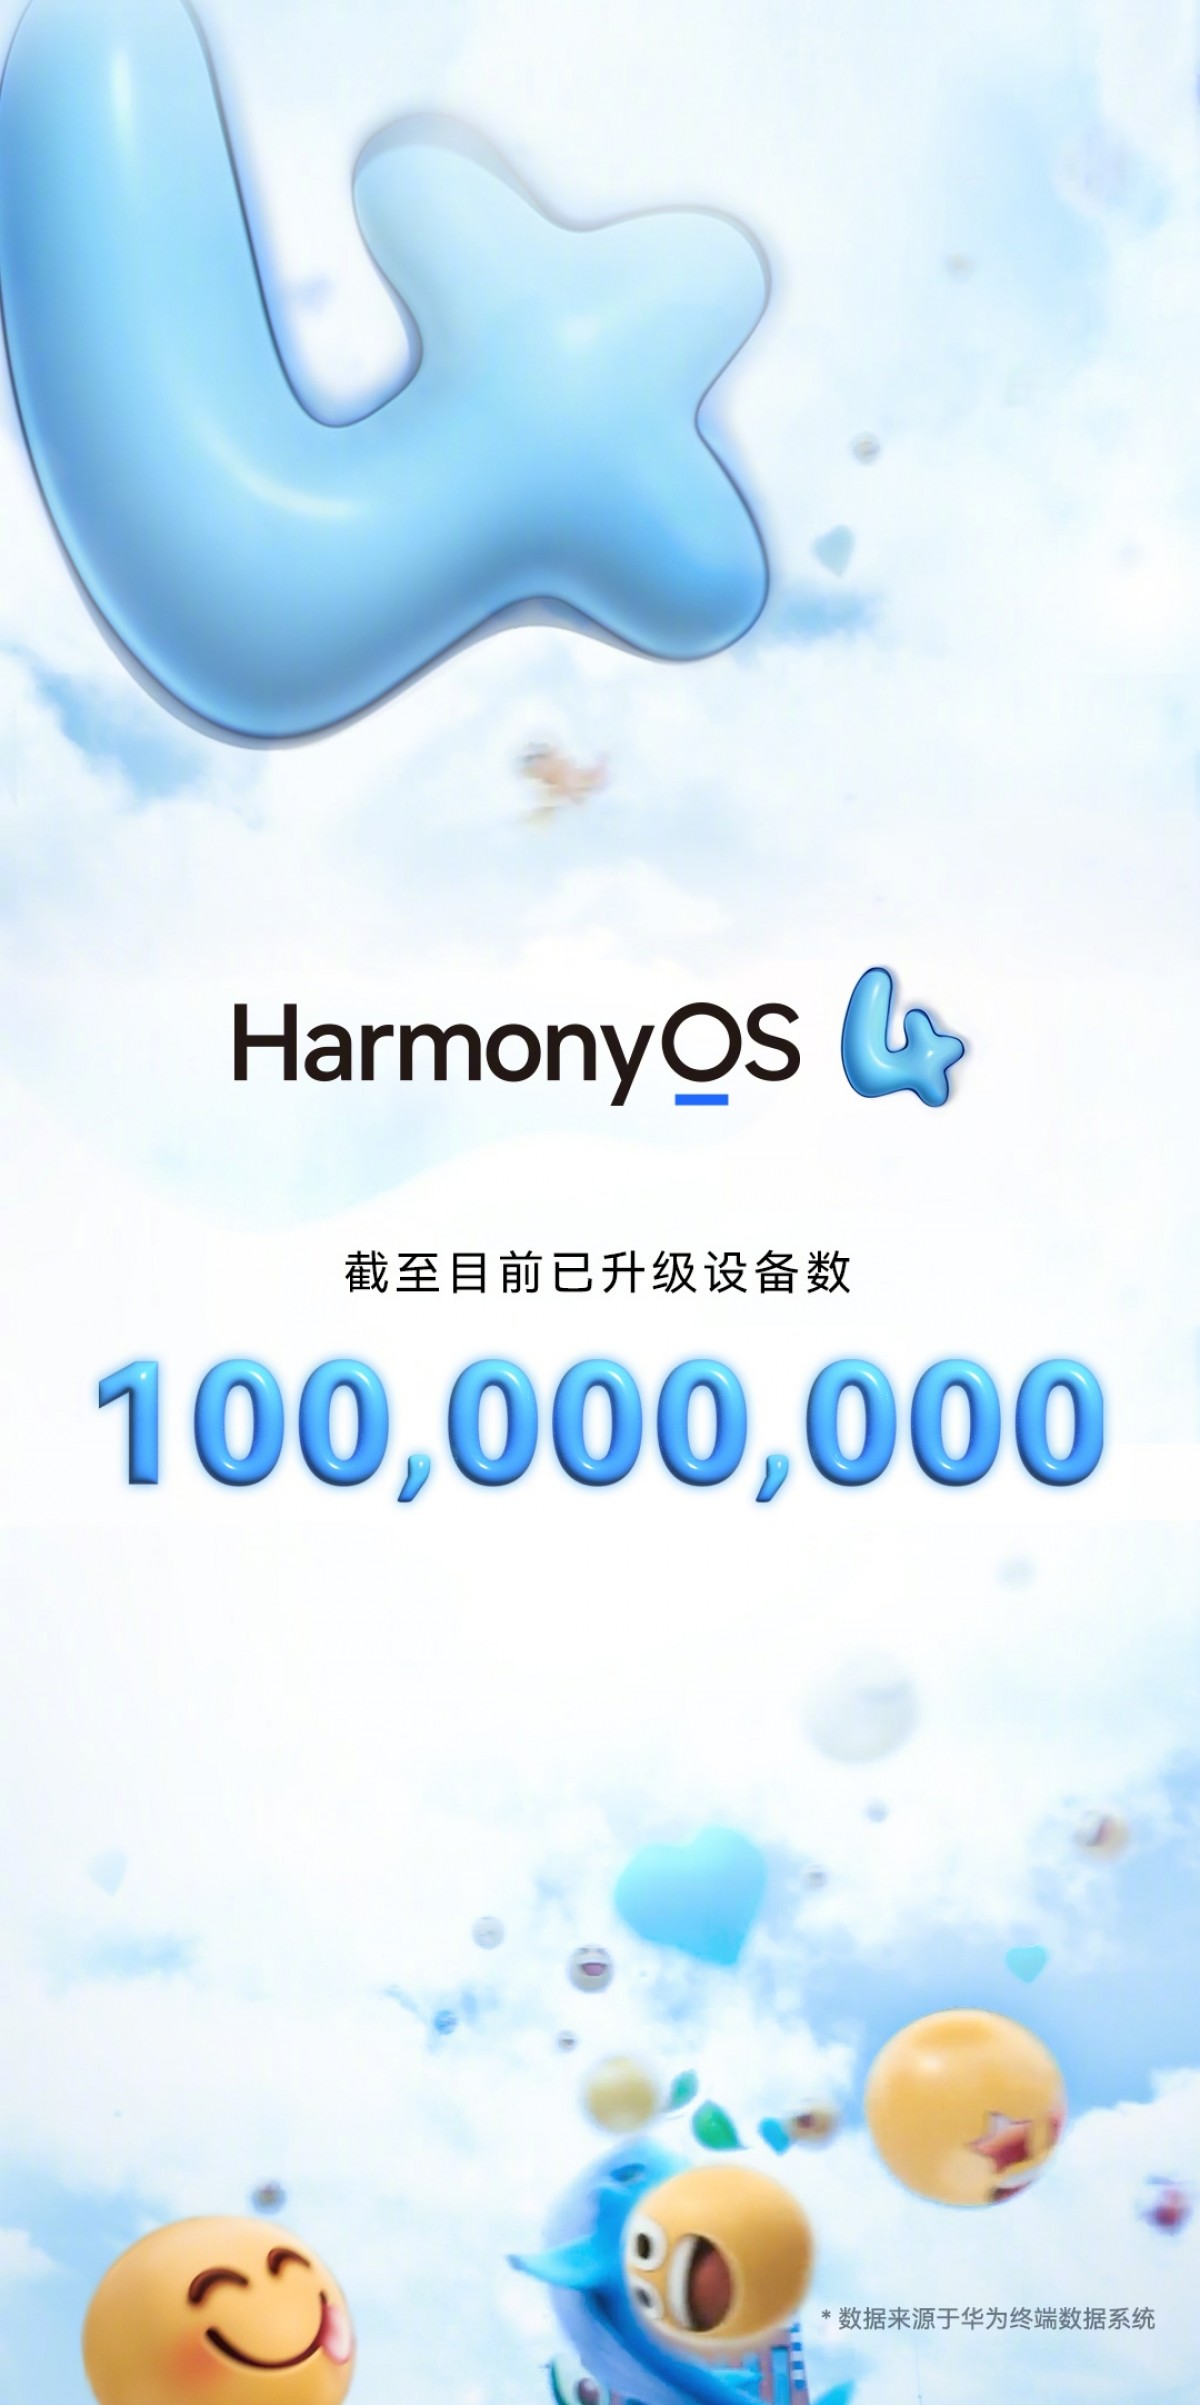 هواوي تحتفل بوصول 100 مليون جهاز إلى نظام التشغيل HarmonyOS 4